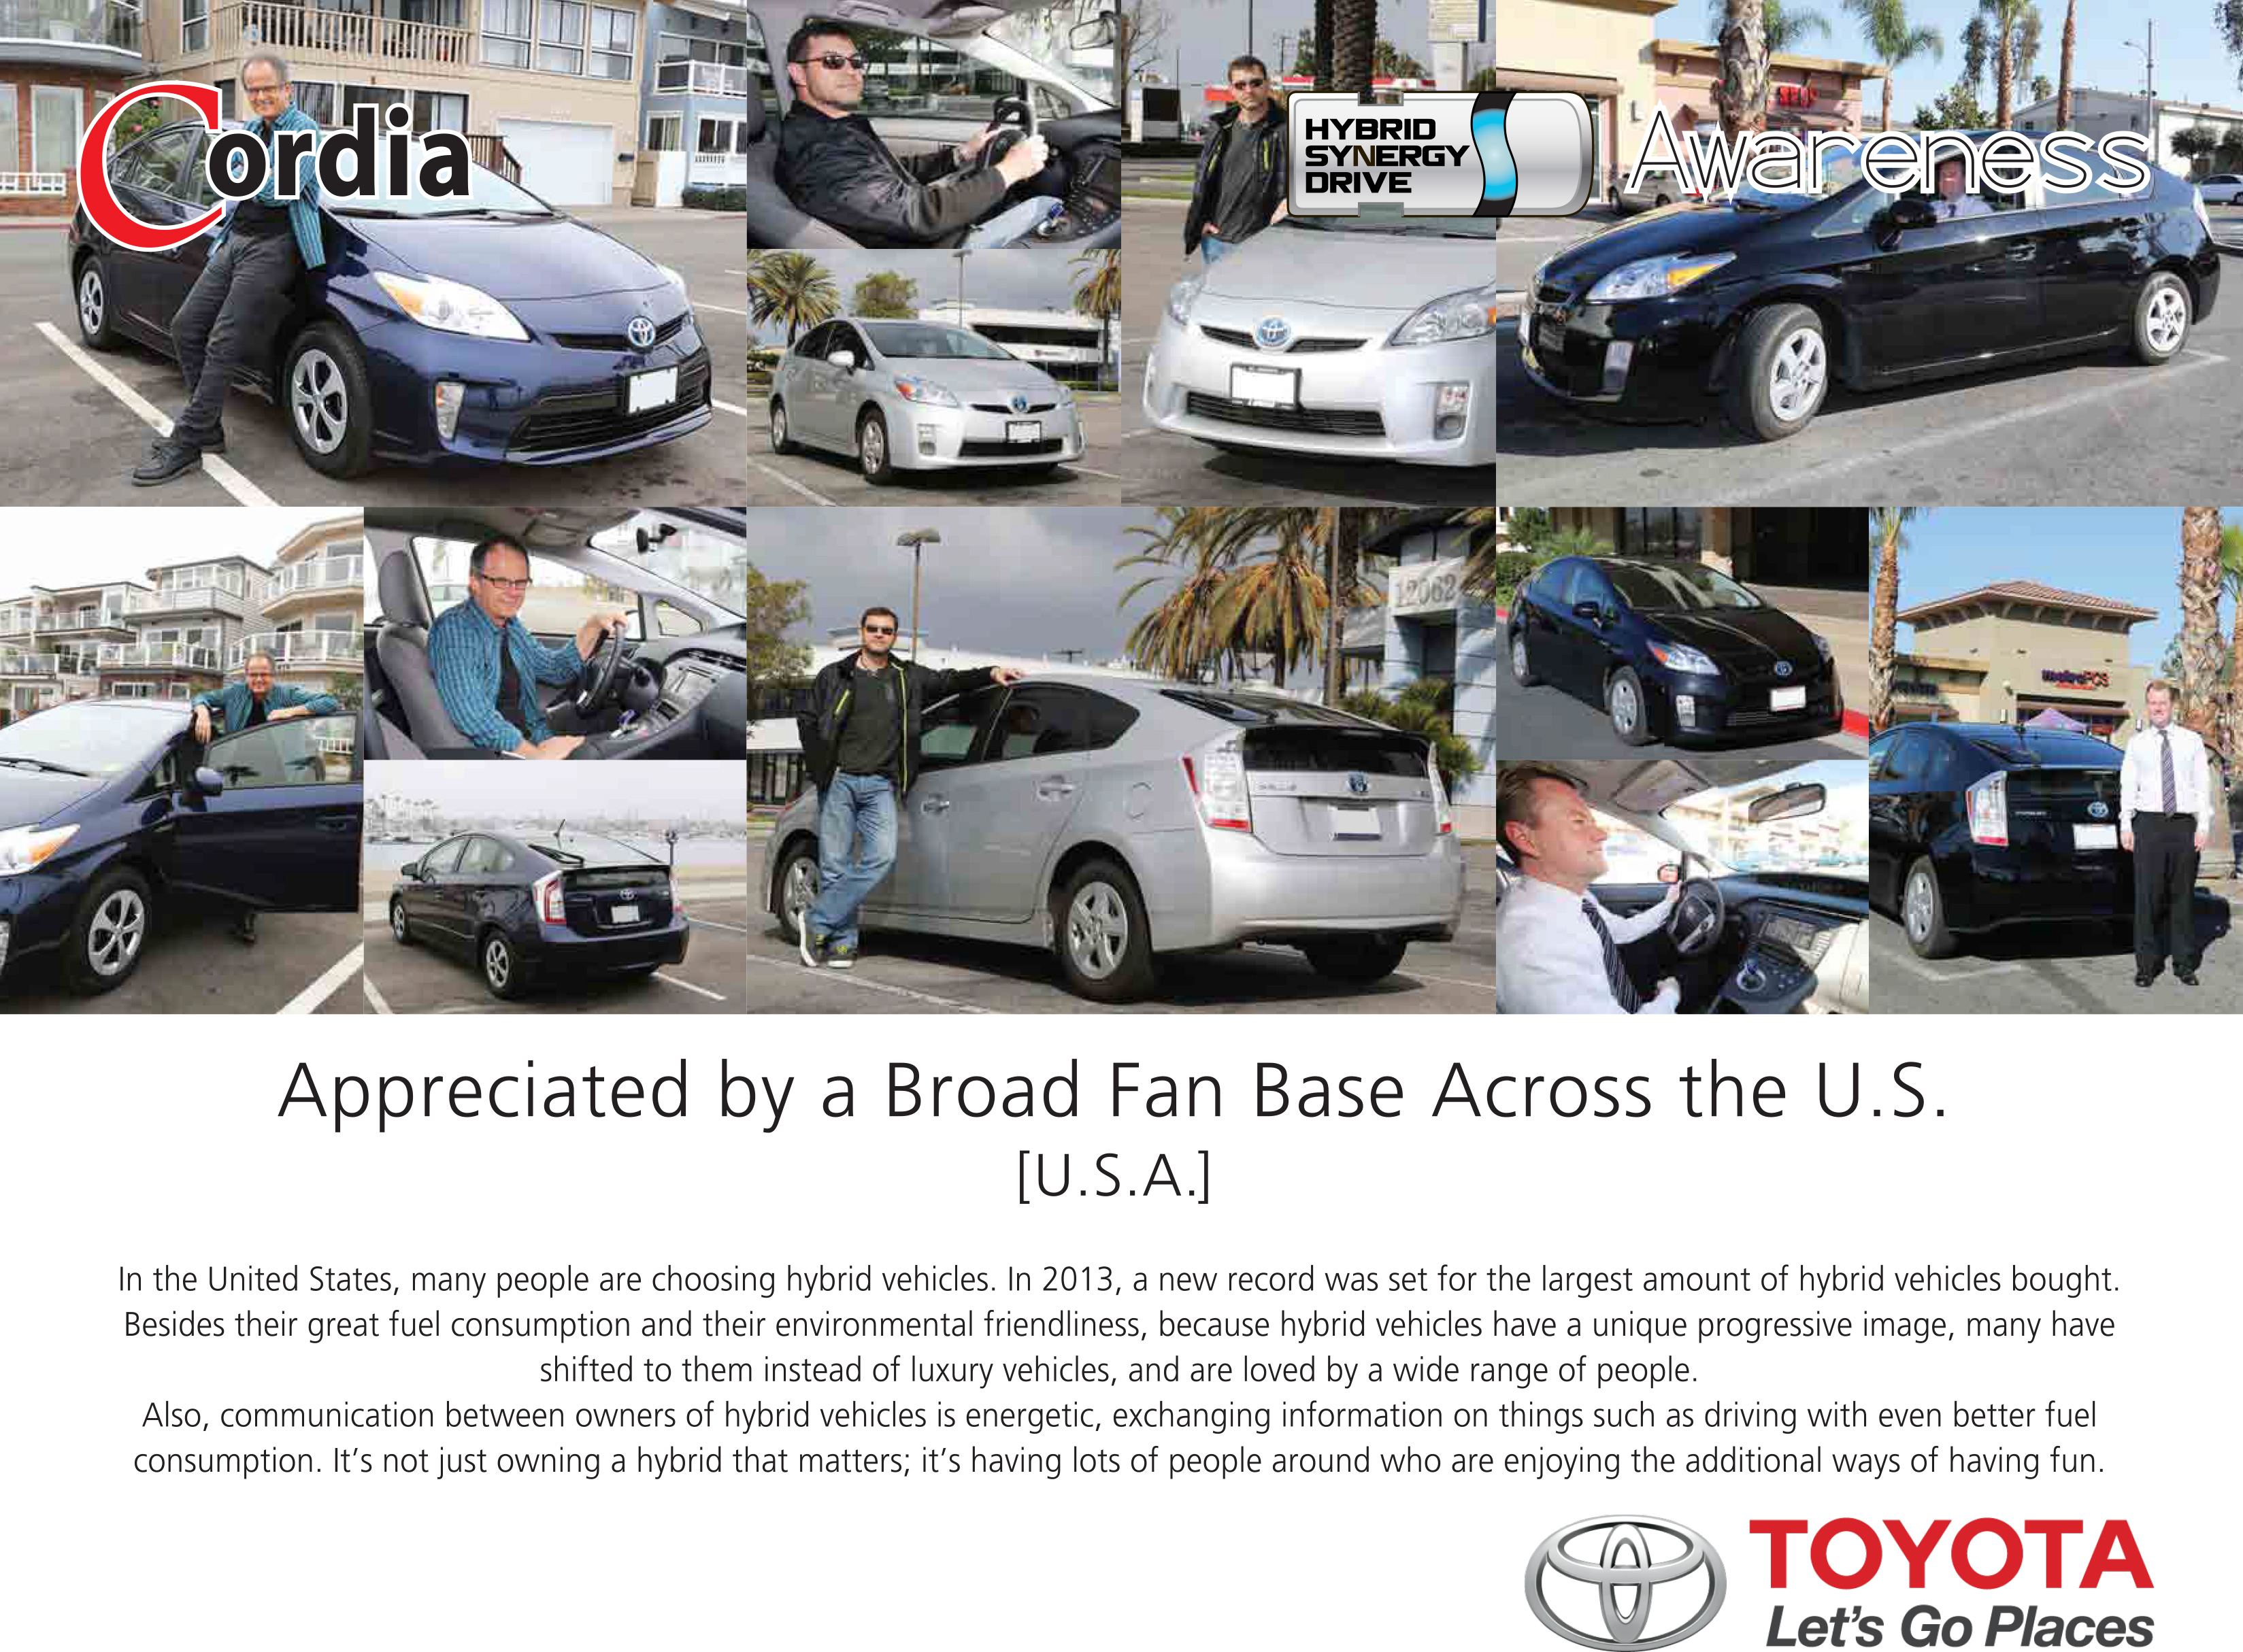 Appreciated by a Broad Fan Base Across the U.S. (U.S.A.) - Hybrid Awareness